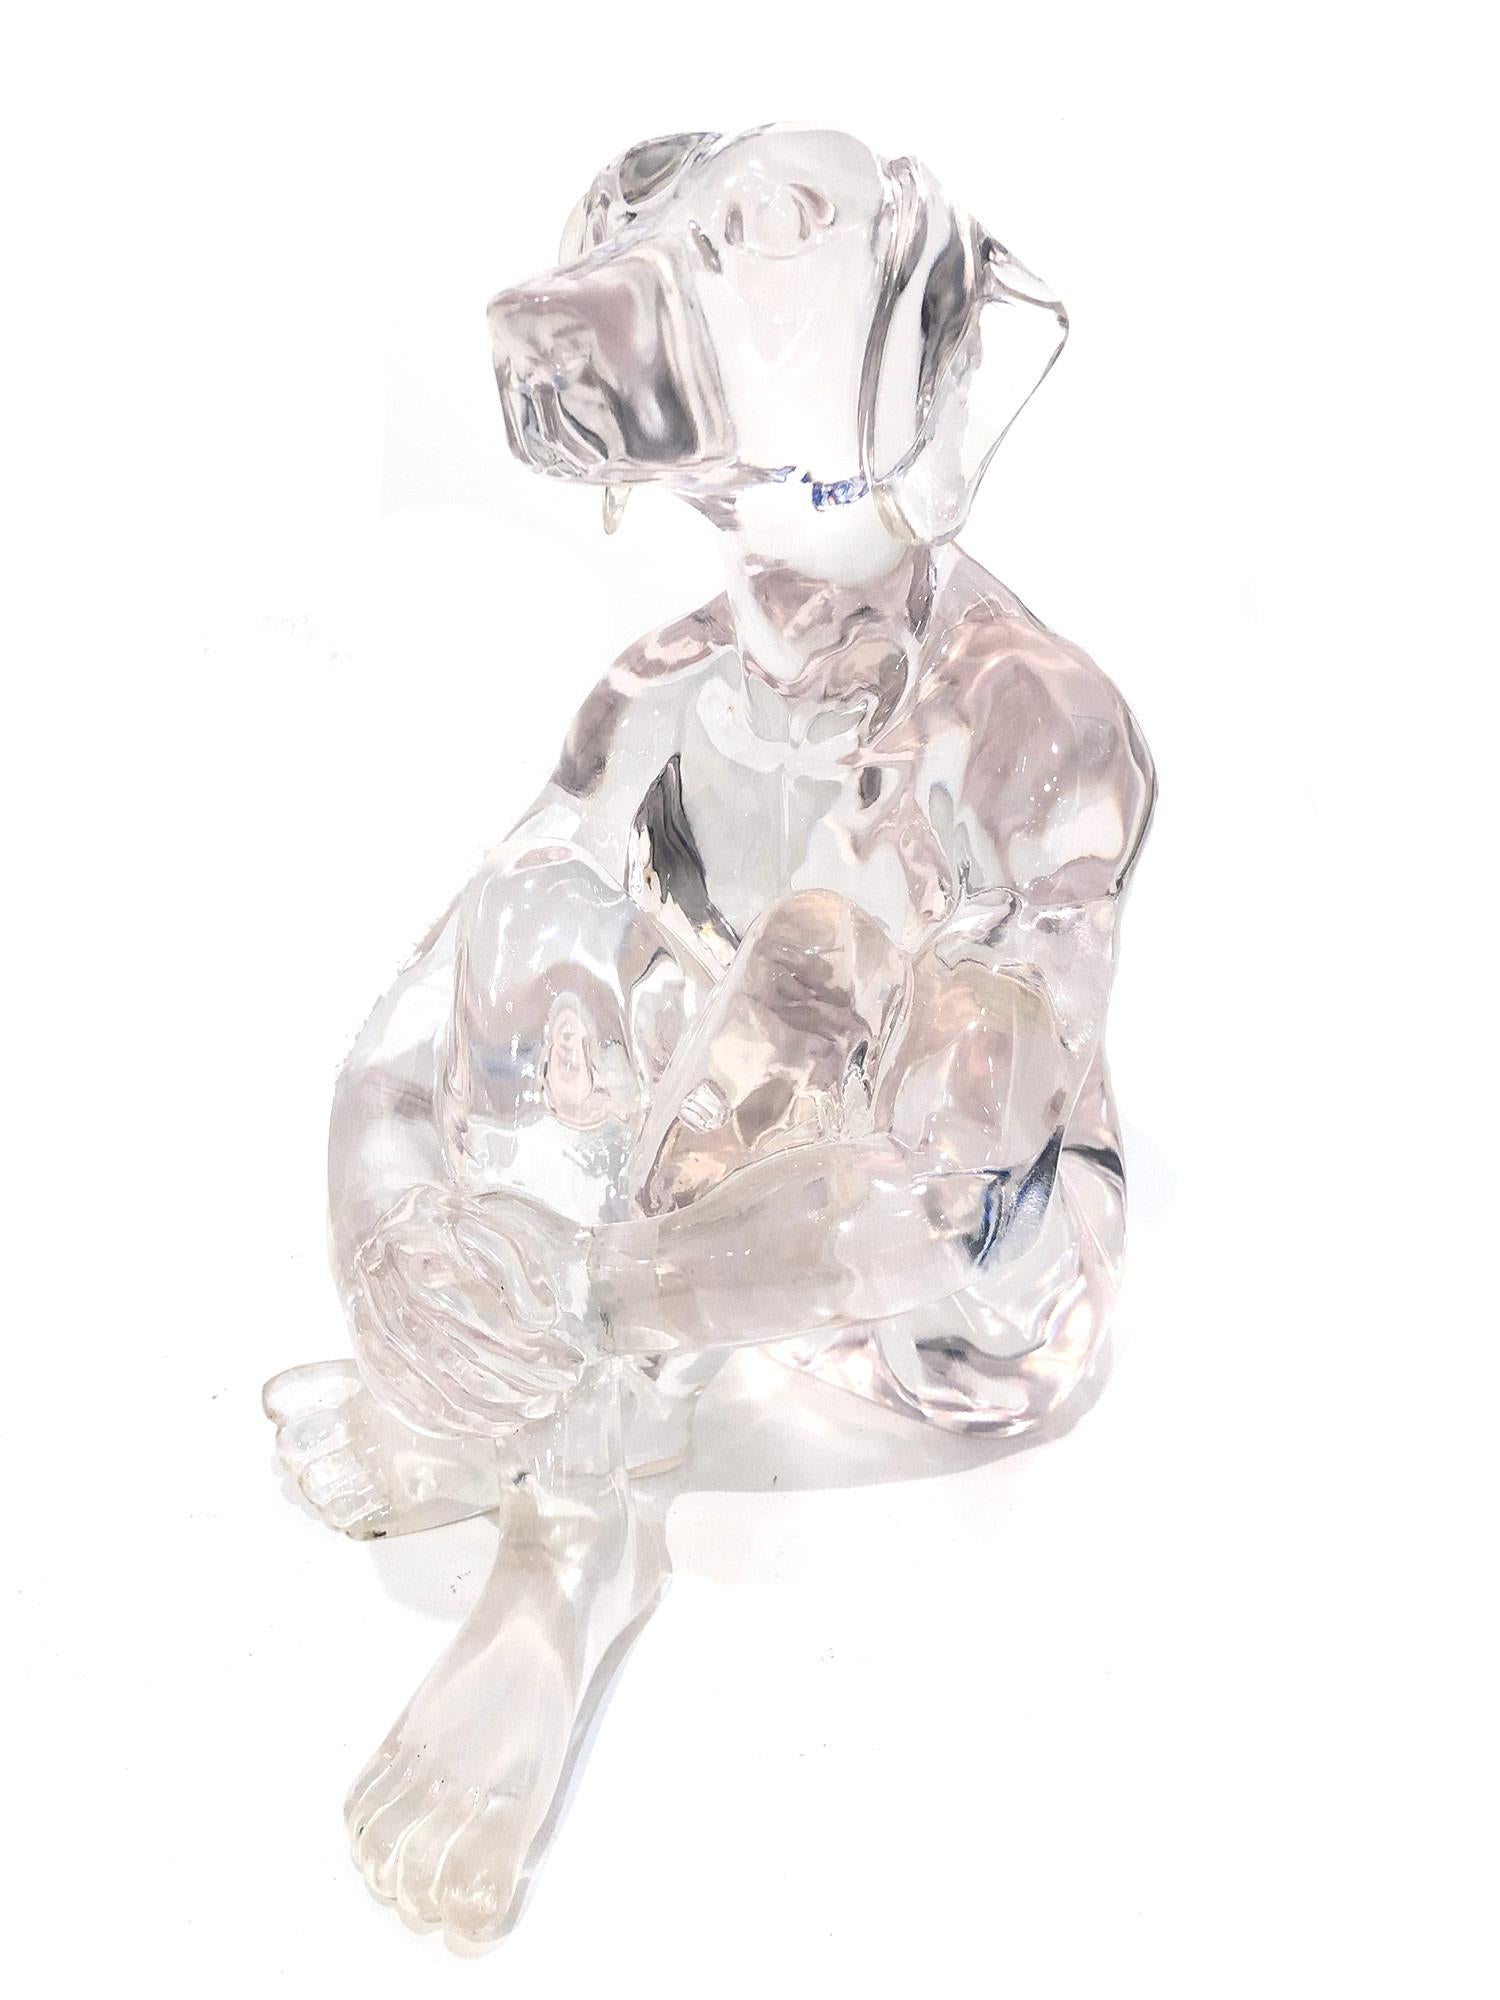 "Lolly Dogman (Transparente)" Escultura Pop Art de Poliresina Transparente de Dogman Sentado